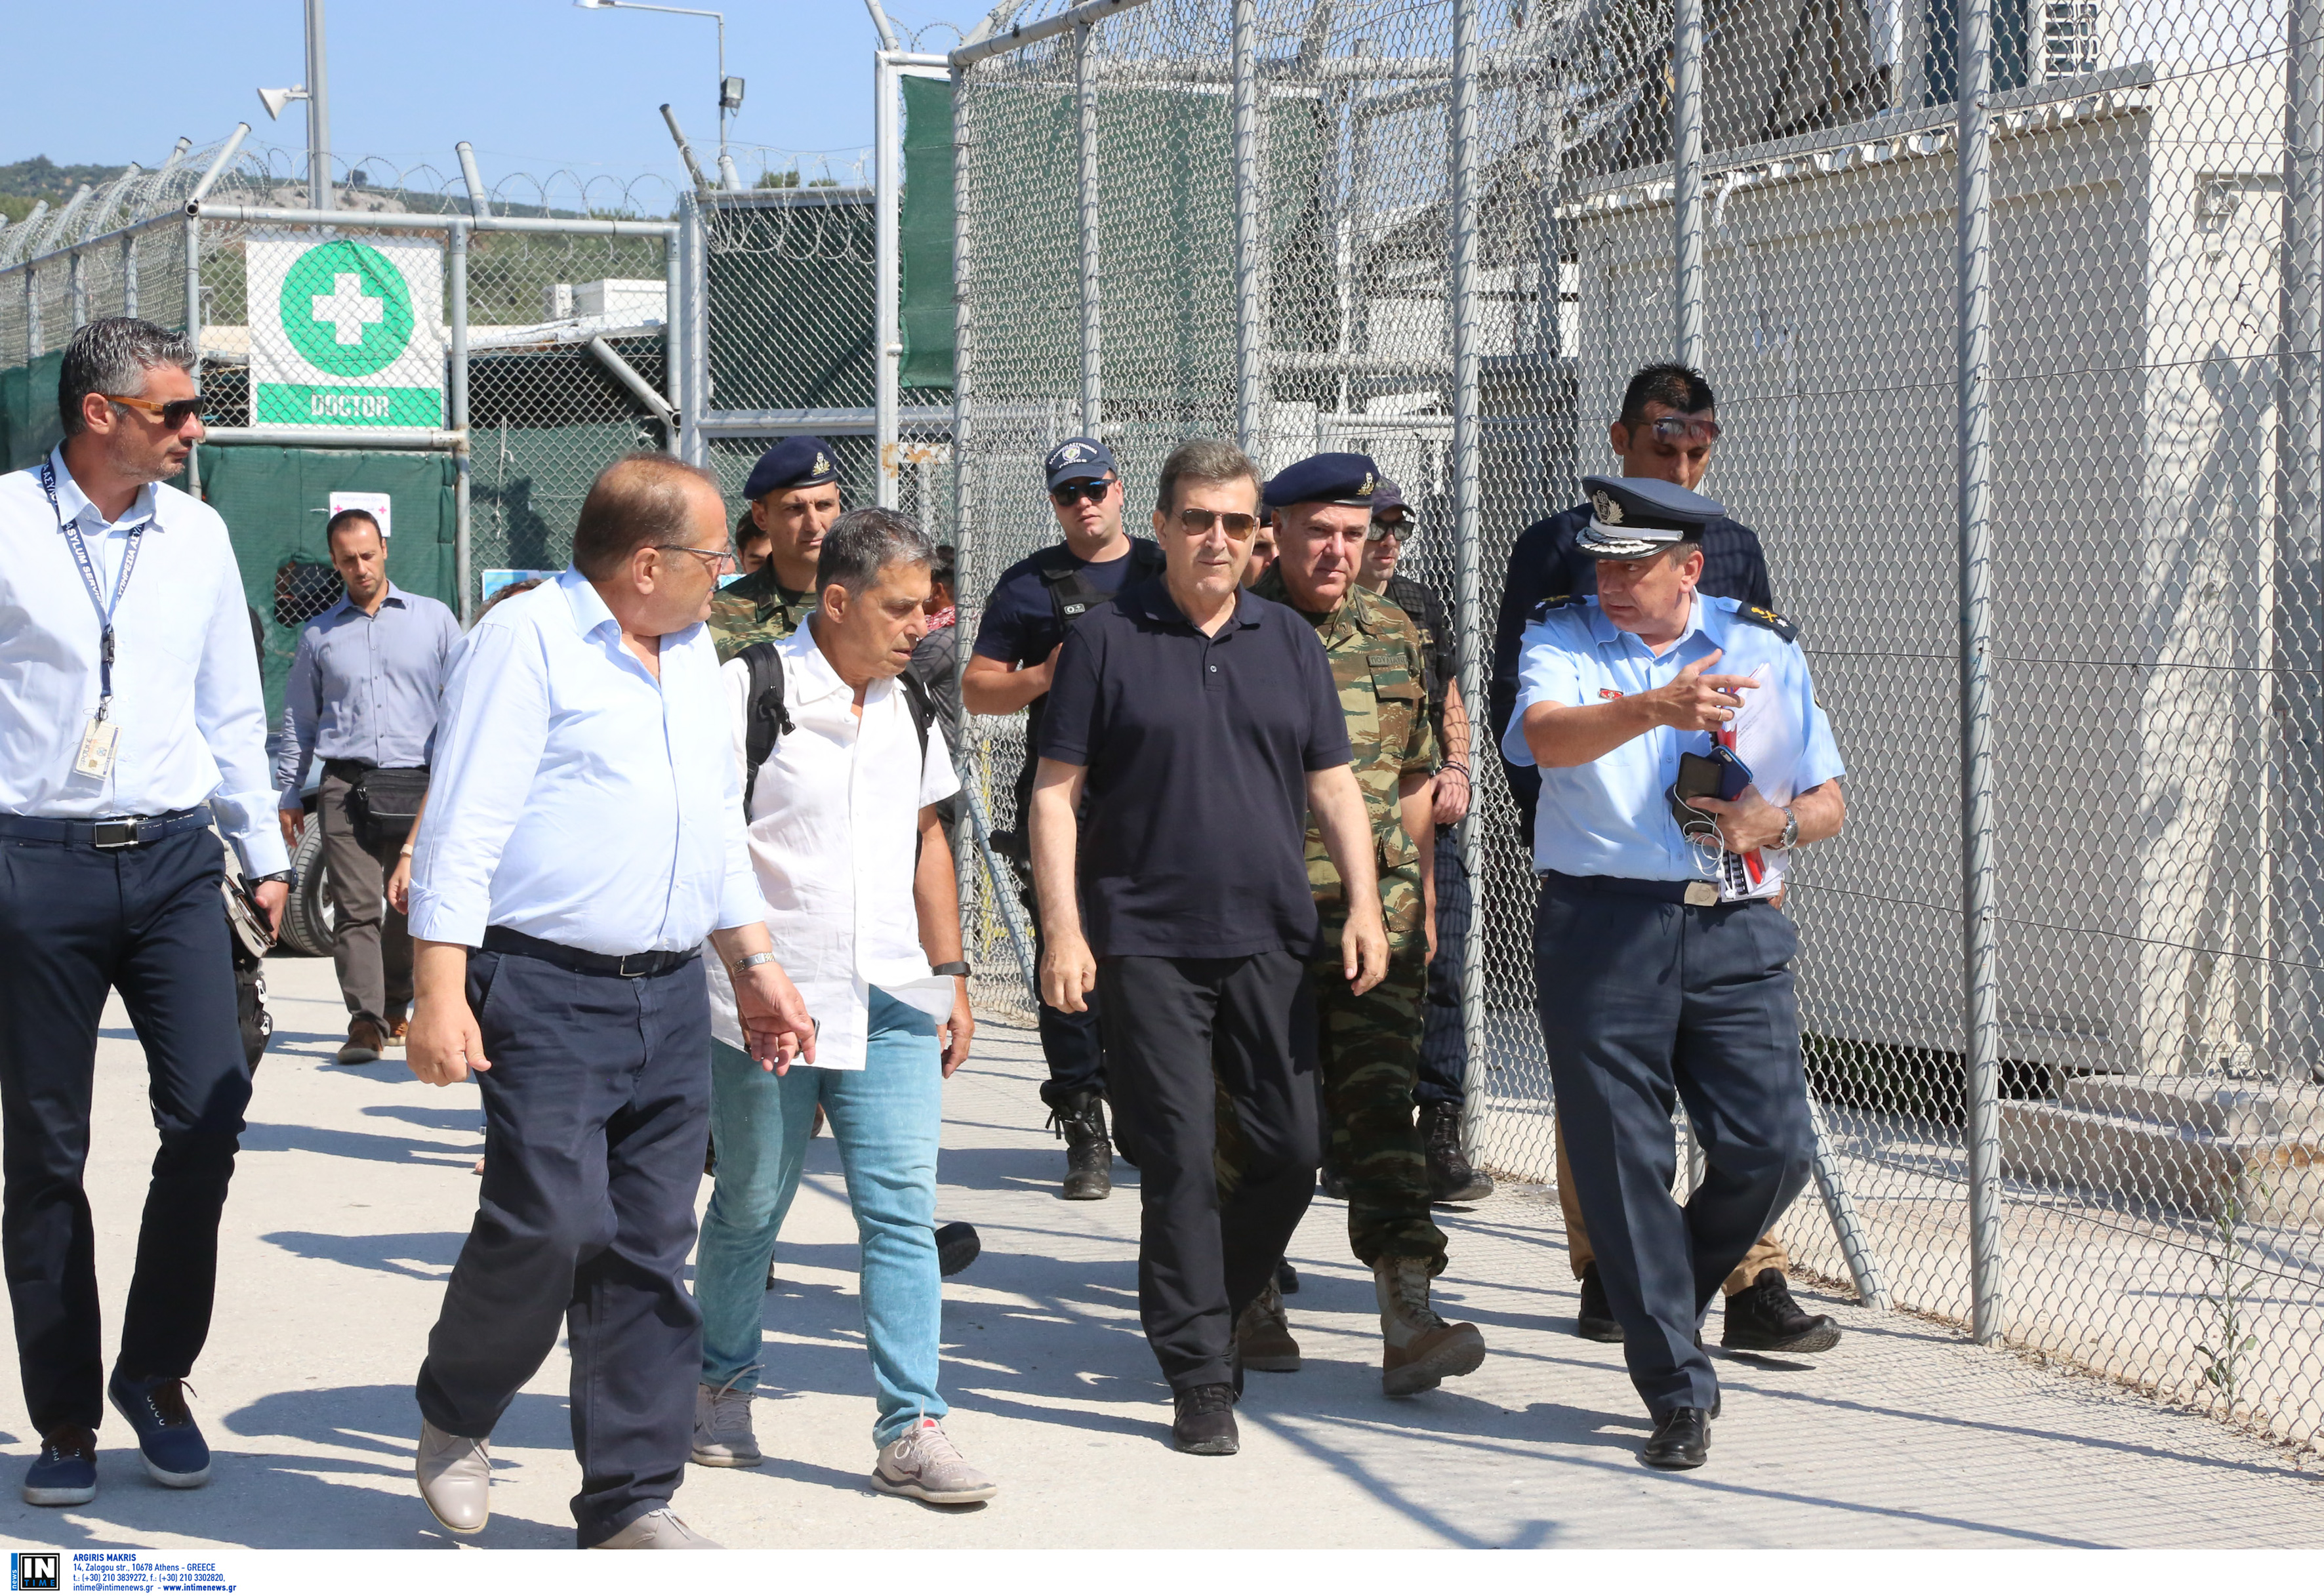 Μυτιλήνη: Οι πρώτες εντυπώσεις του Μιχάλη Χρυσοχοΐδη από τις αυτοψίες στα κέντρα φιλοξενίας μεταναστών [pics]